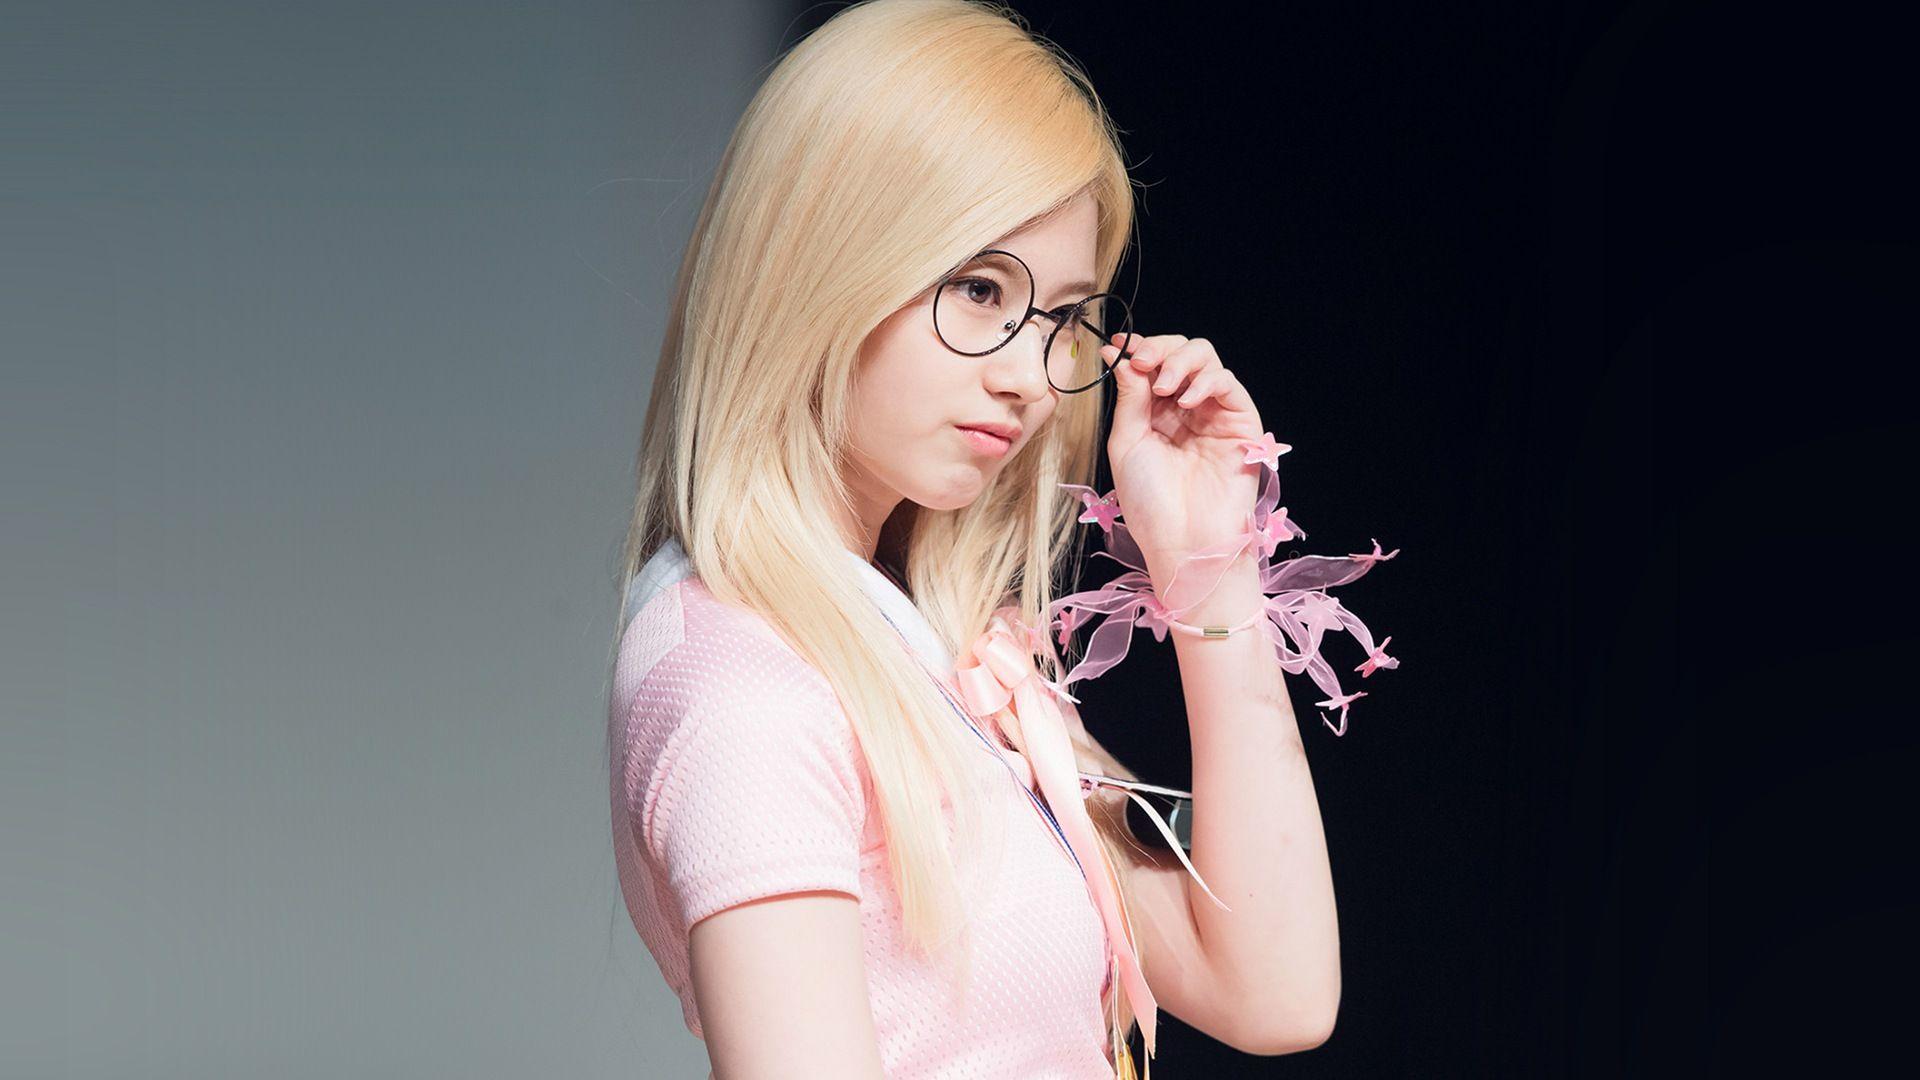 Sana K Pop TWICE Cute Glasses Blonde. Wallpaper